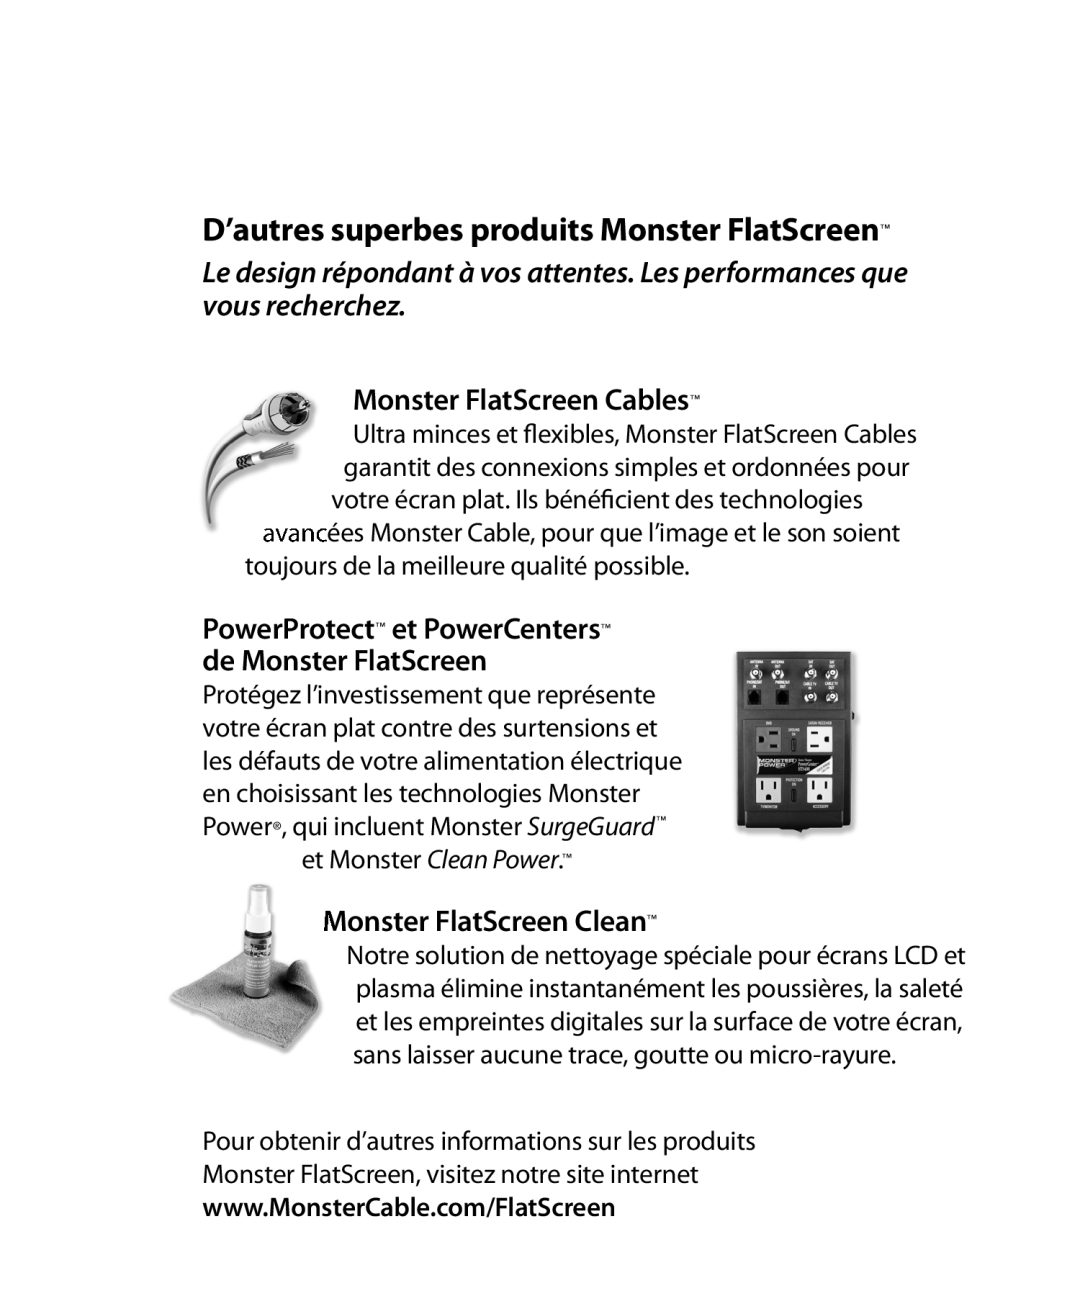 Monster Cable 200M D’autres superbes produits Monster FlatScreen, Monster FlatScreen Cables, onster FlatScreen Clean 